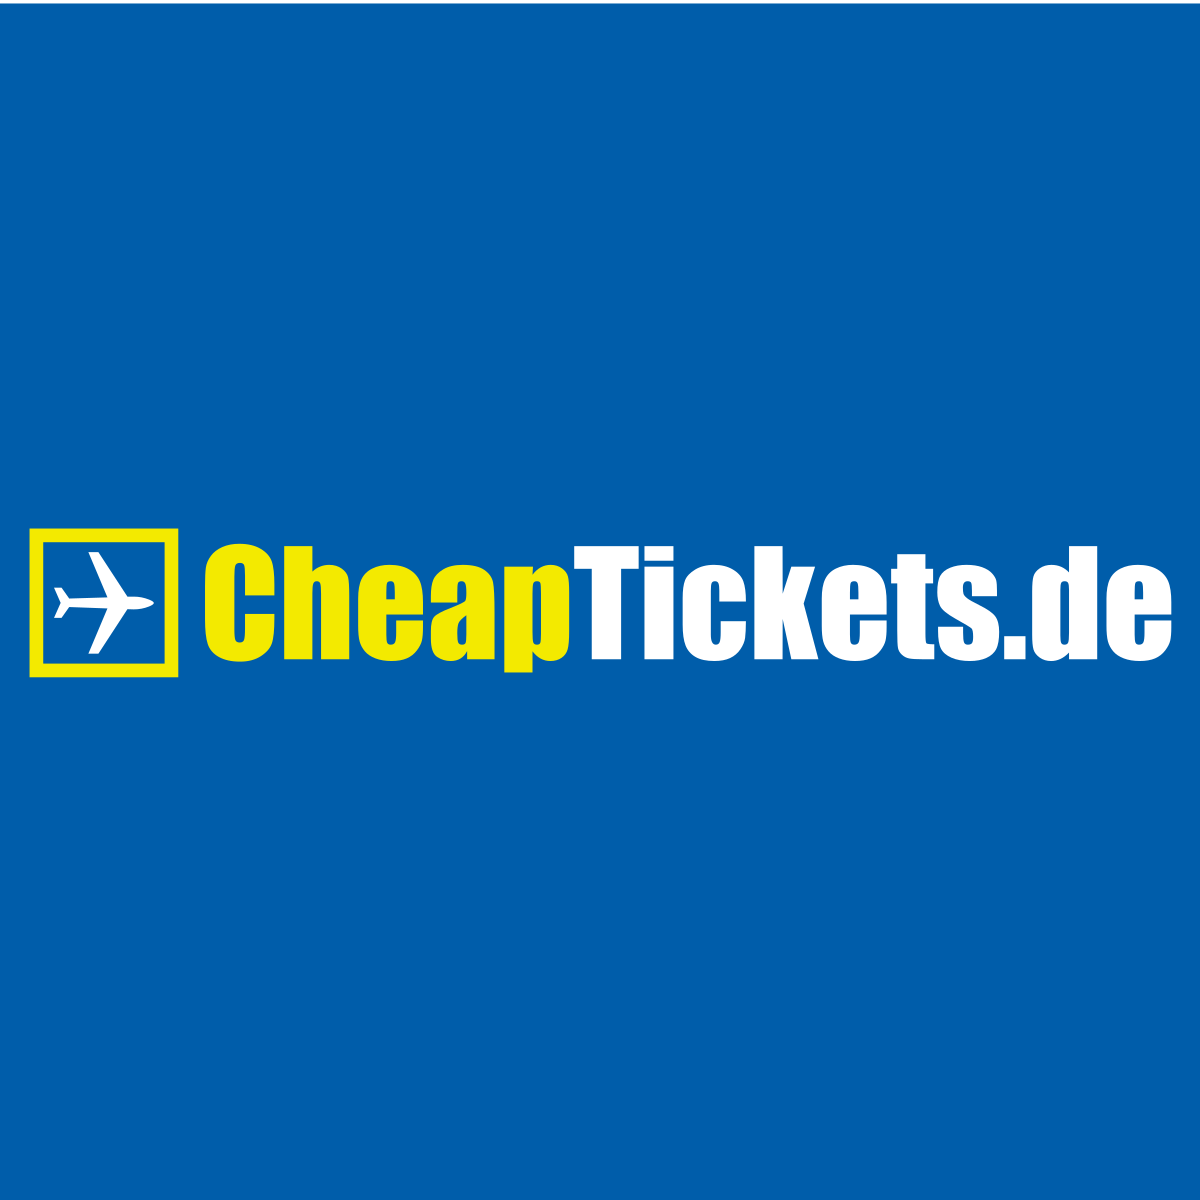 Ryanair celebra la condena a ‘cheaptickets.de’